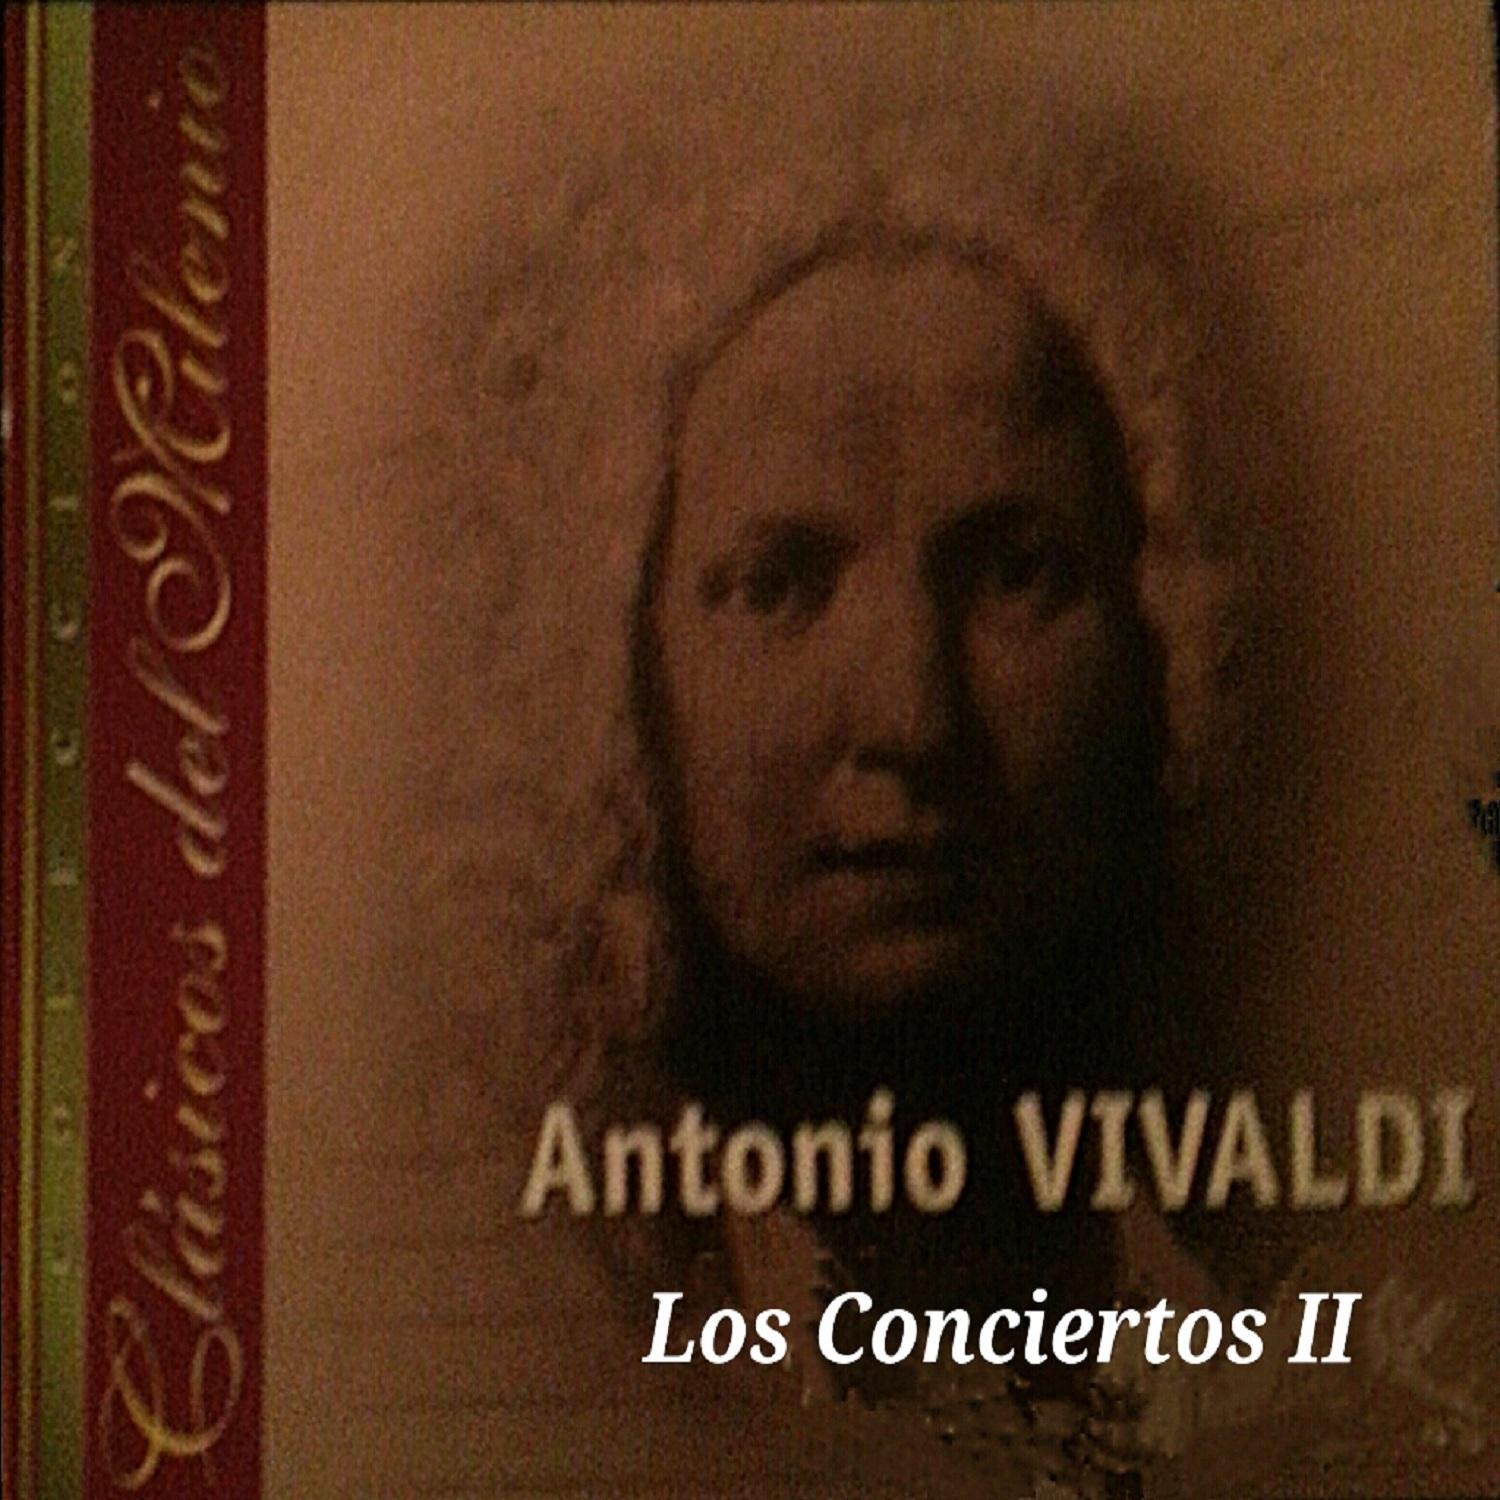 Clásicos del Milenio, Los Conciertos II专辑